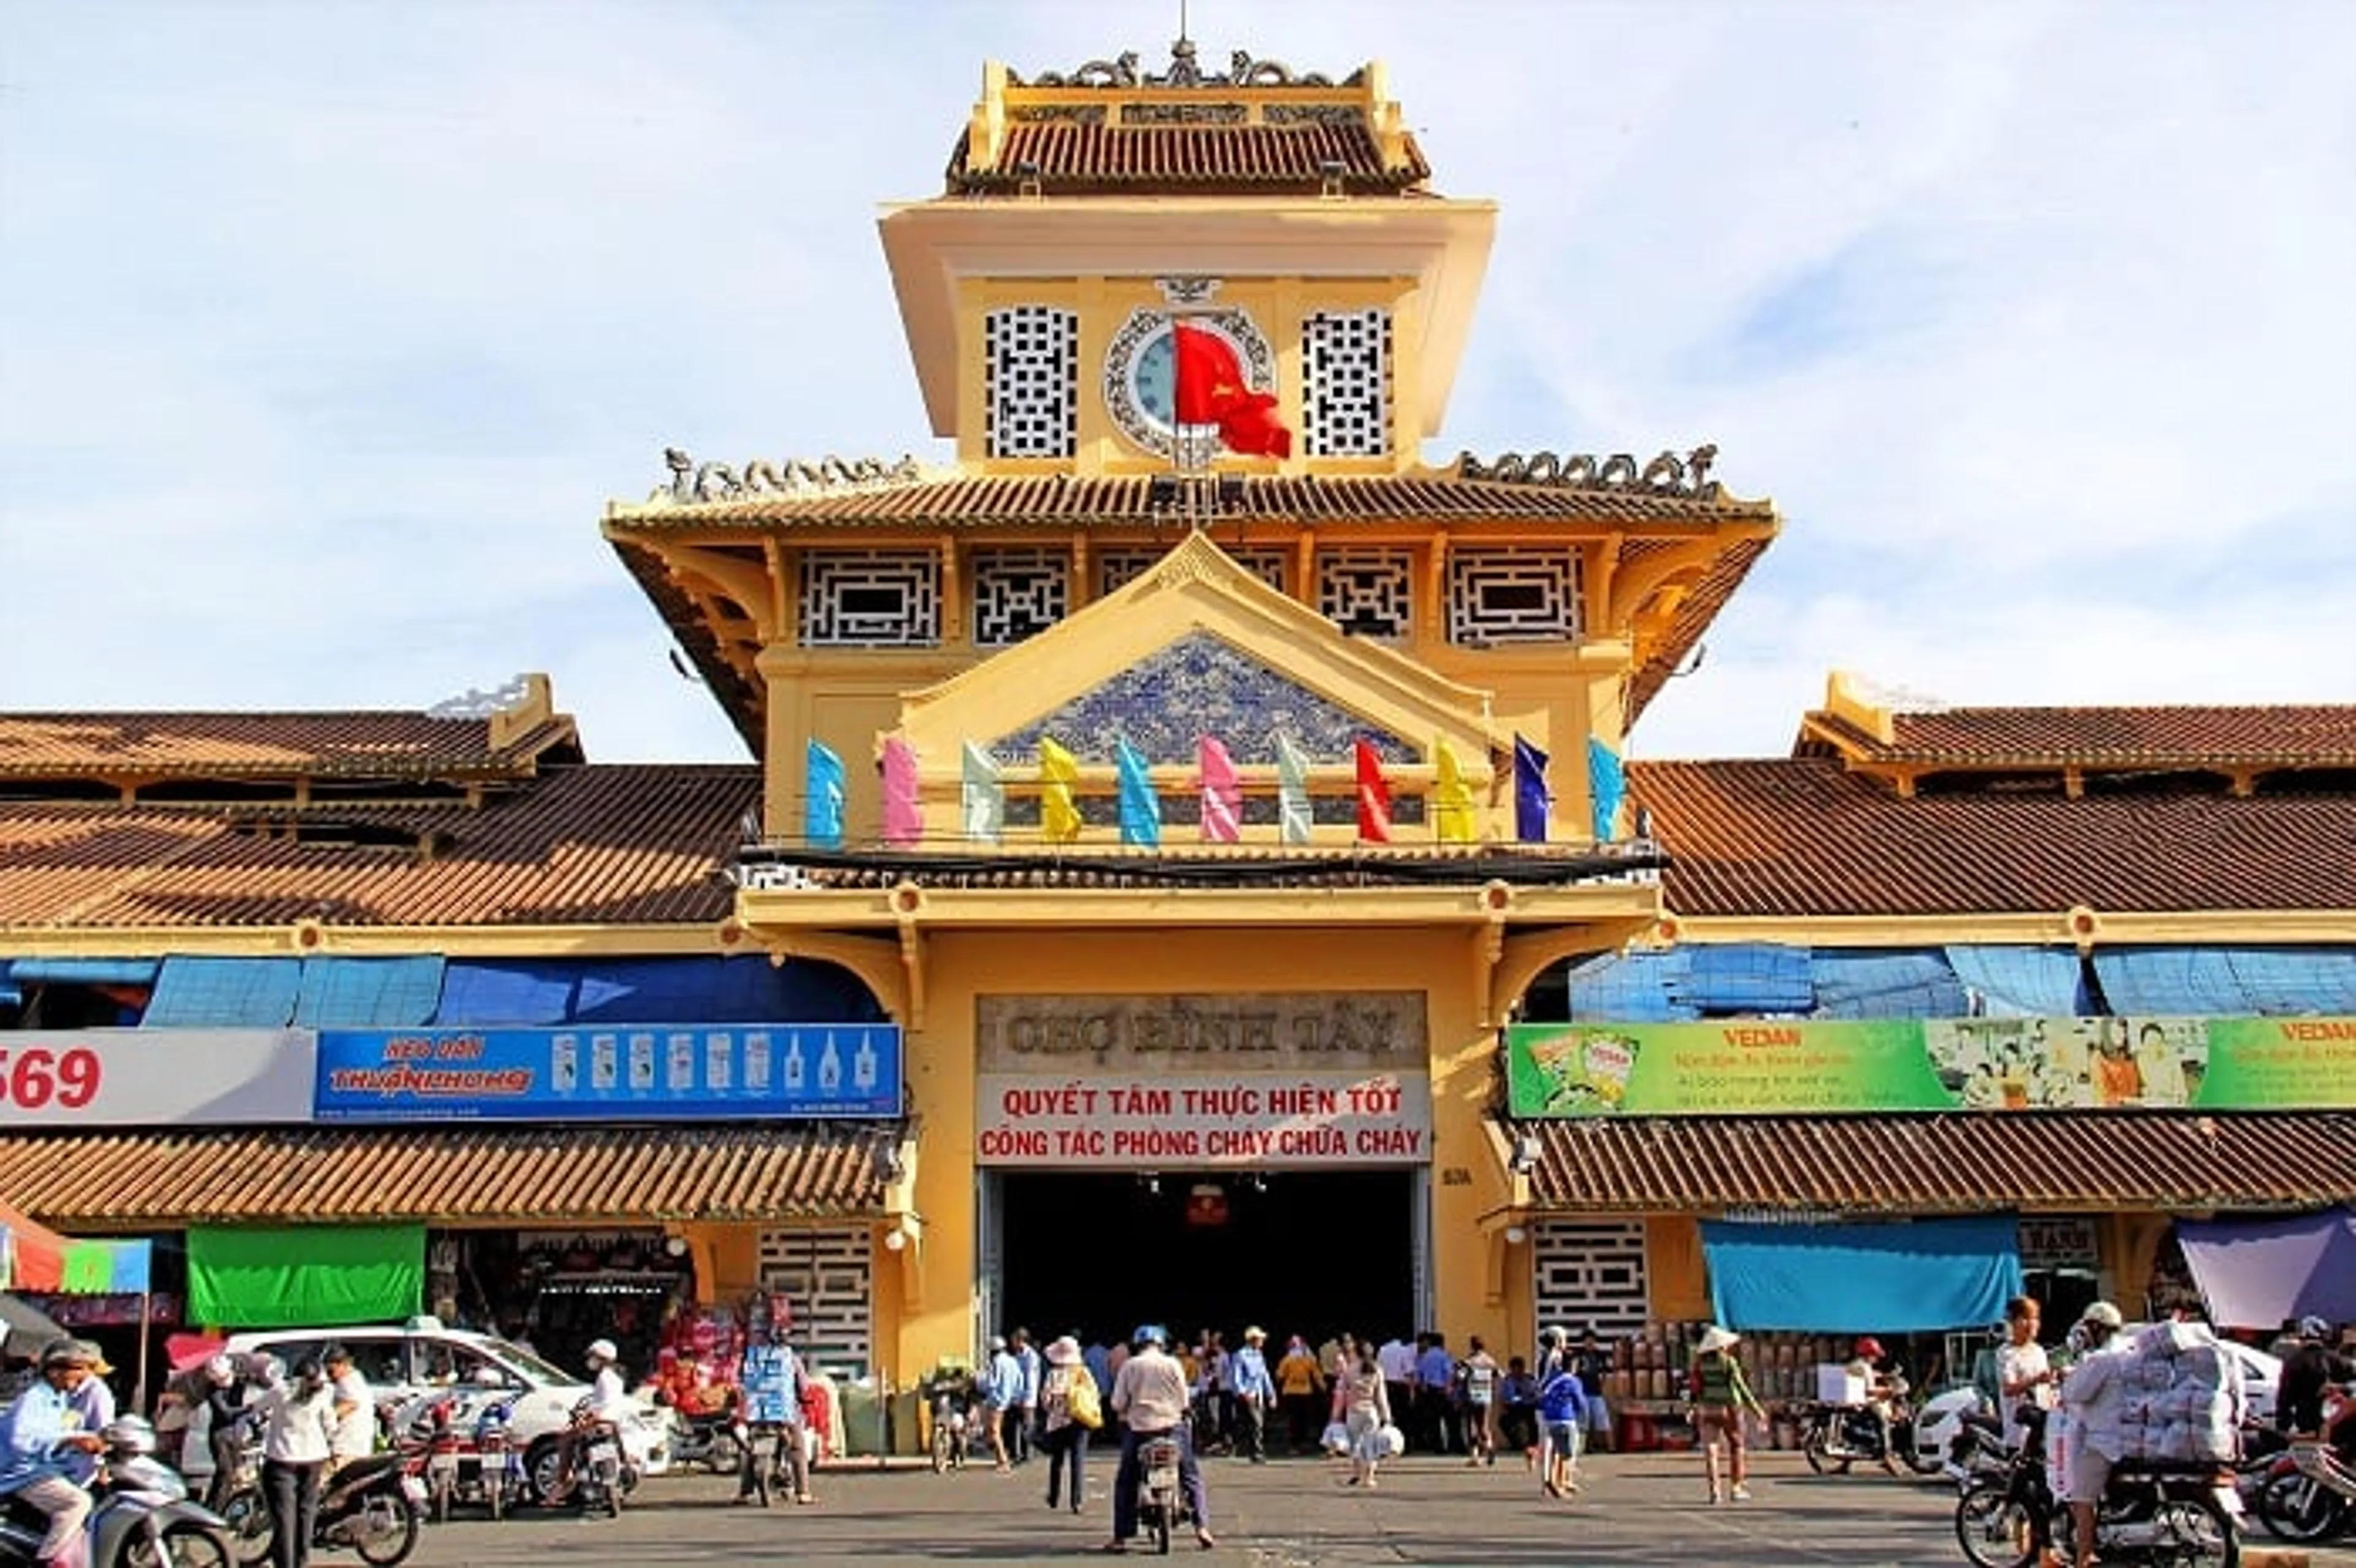 Chợ Bình Tây: “Bức tranh” văn hóa và đời sống sôi động tại Sài Gòn